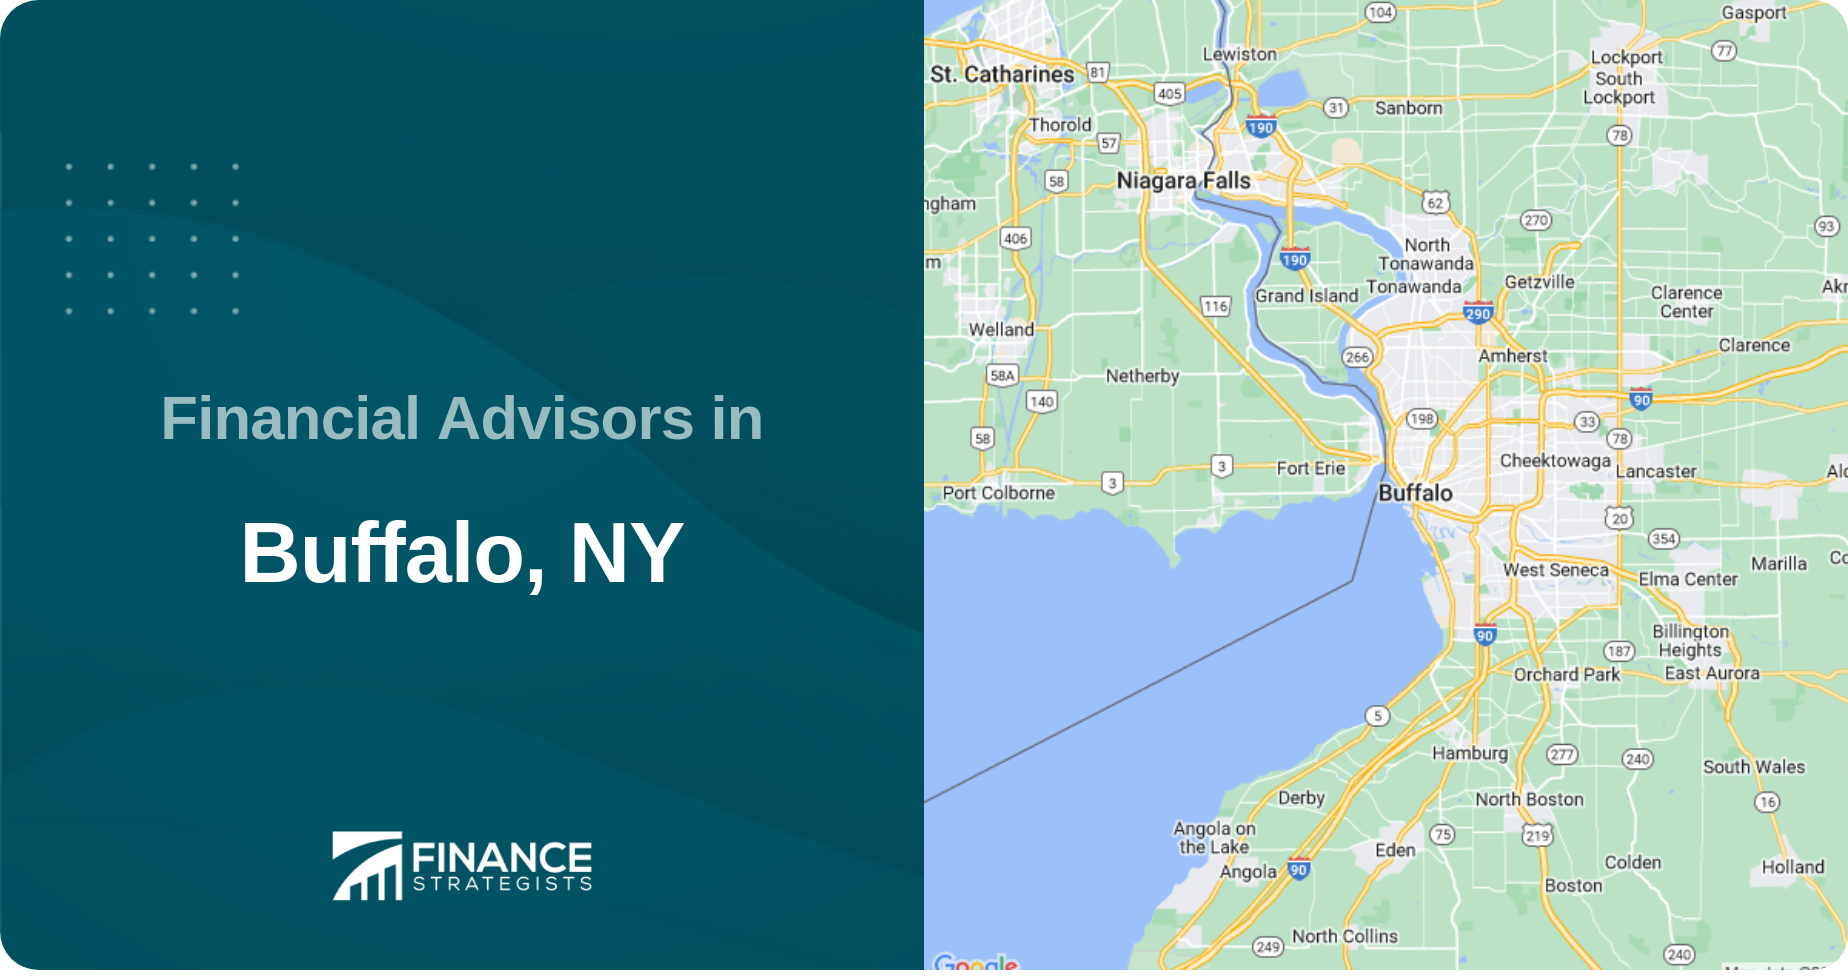 Financial Advisors in Buffalo, NY